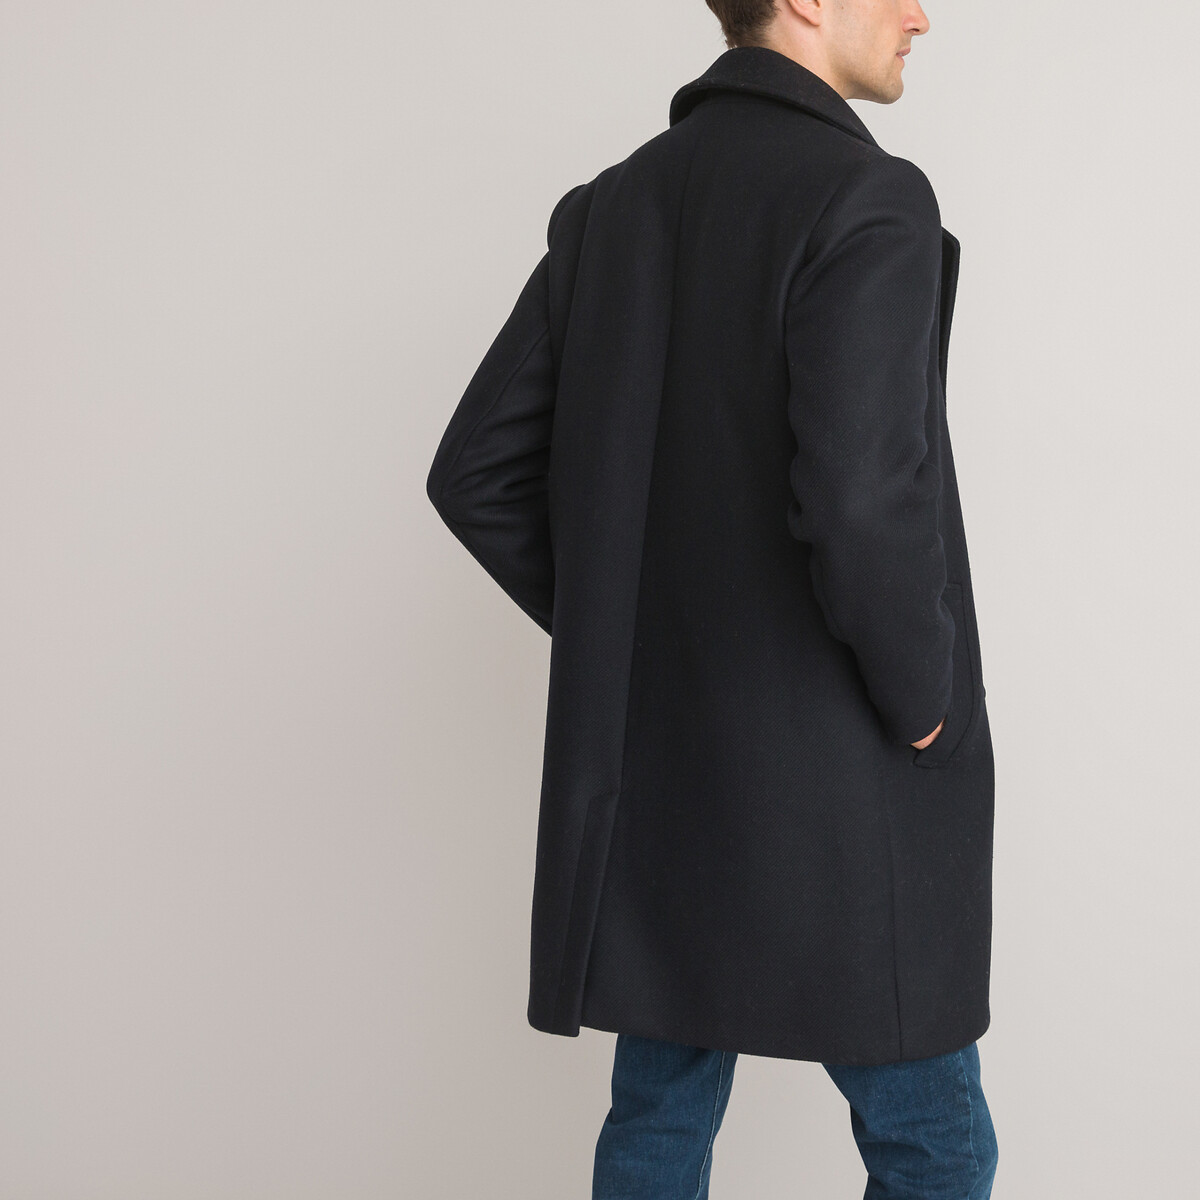 Пальто Из чистой шерсти производства Франции S синий LaRedoute, размер S - фото 4